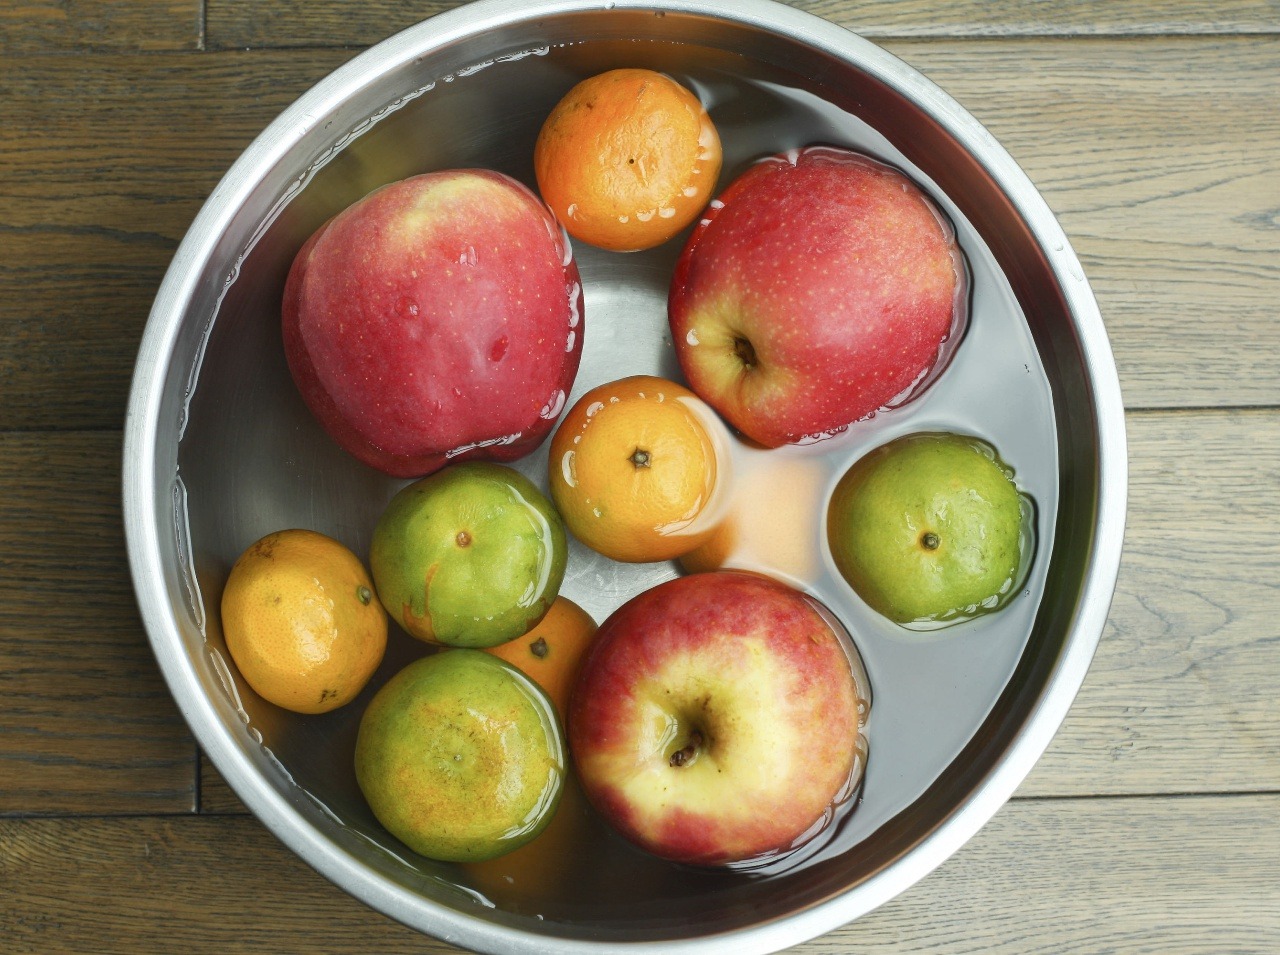 Umývanie ovocia či zeleniny má svoje pravidlá. Ktoré dodržiavate vy? 